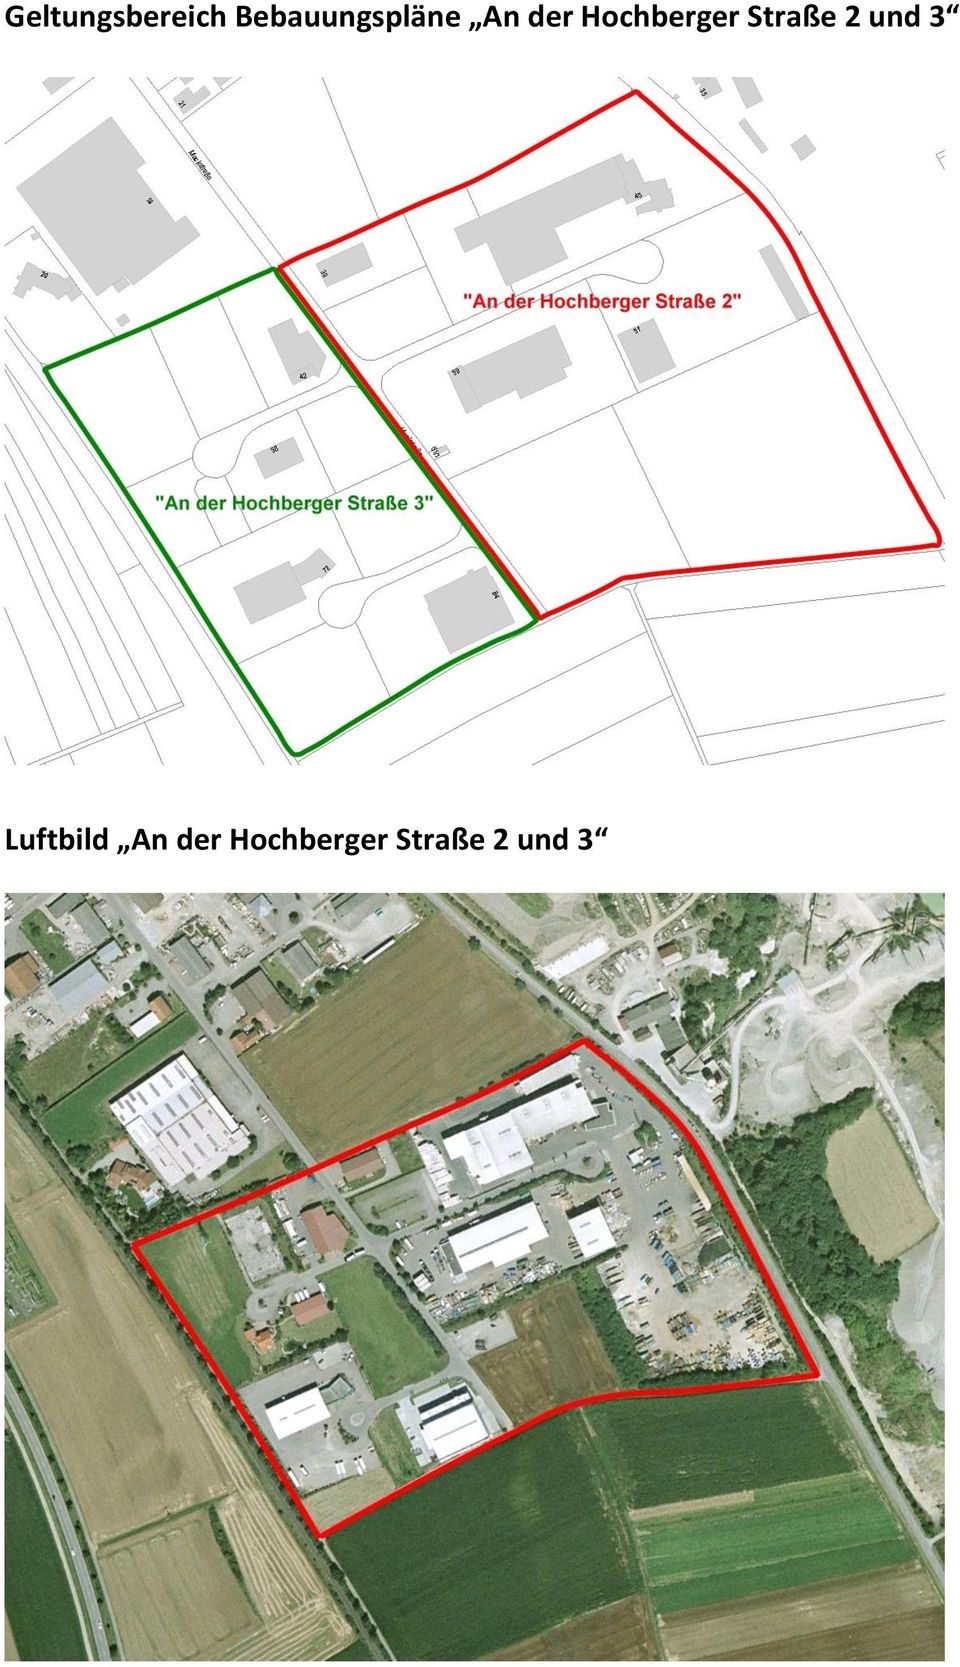 Hochberger Straße 2 und 3